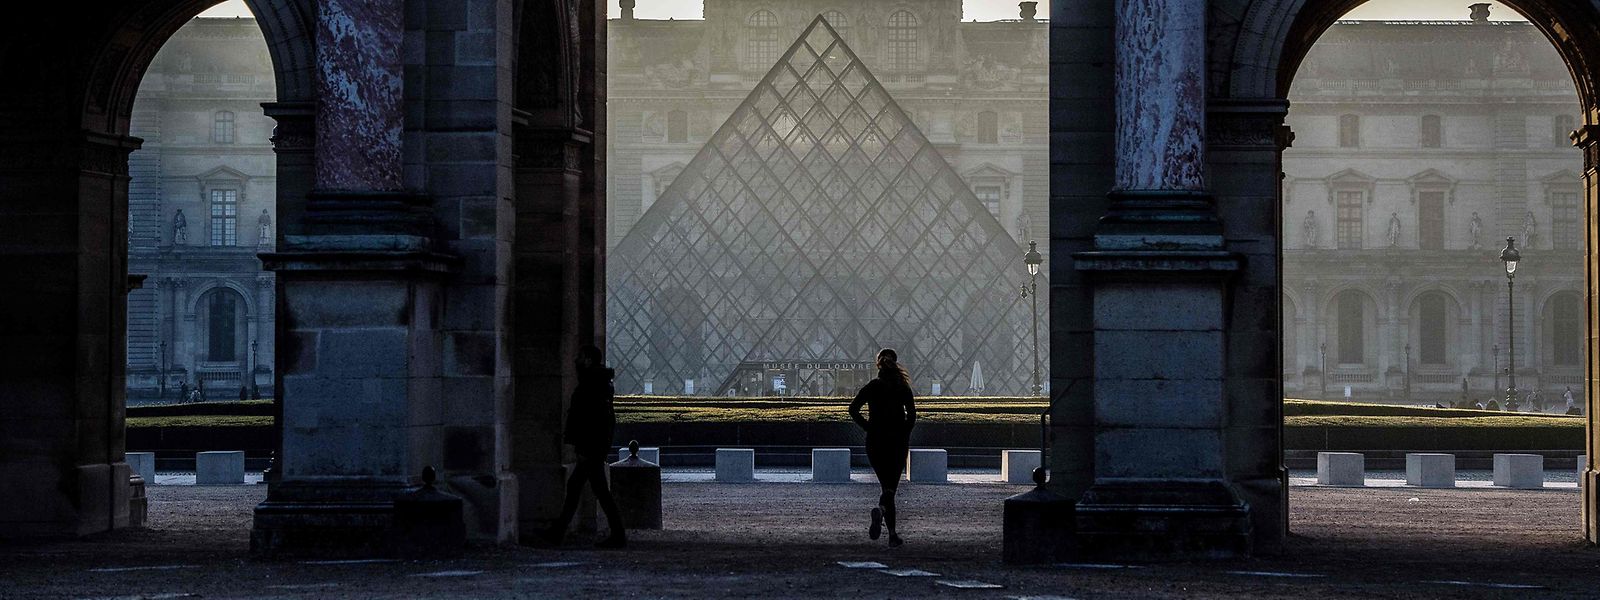 Einst verpönt, heute bejubelt - die Pyramide des Louvre.